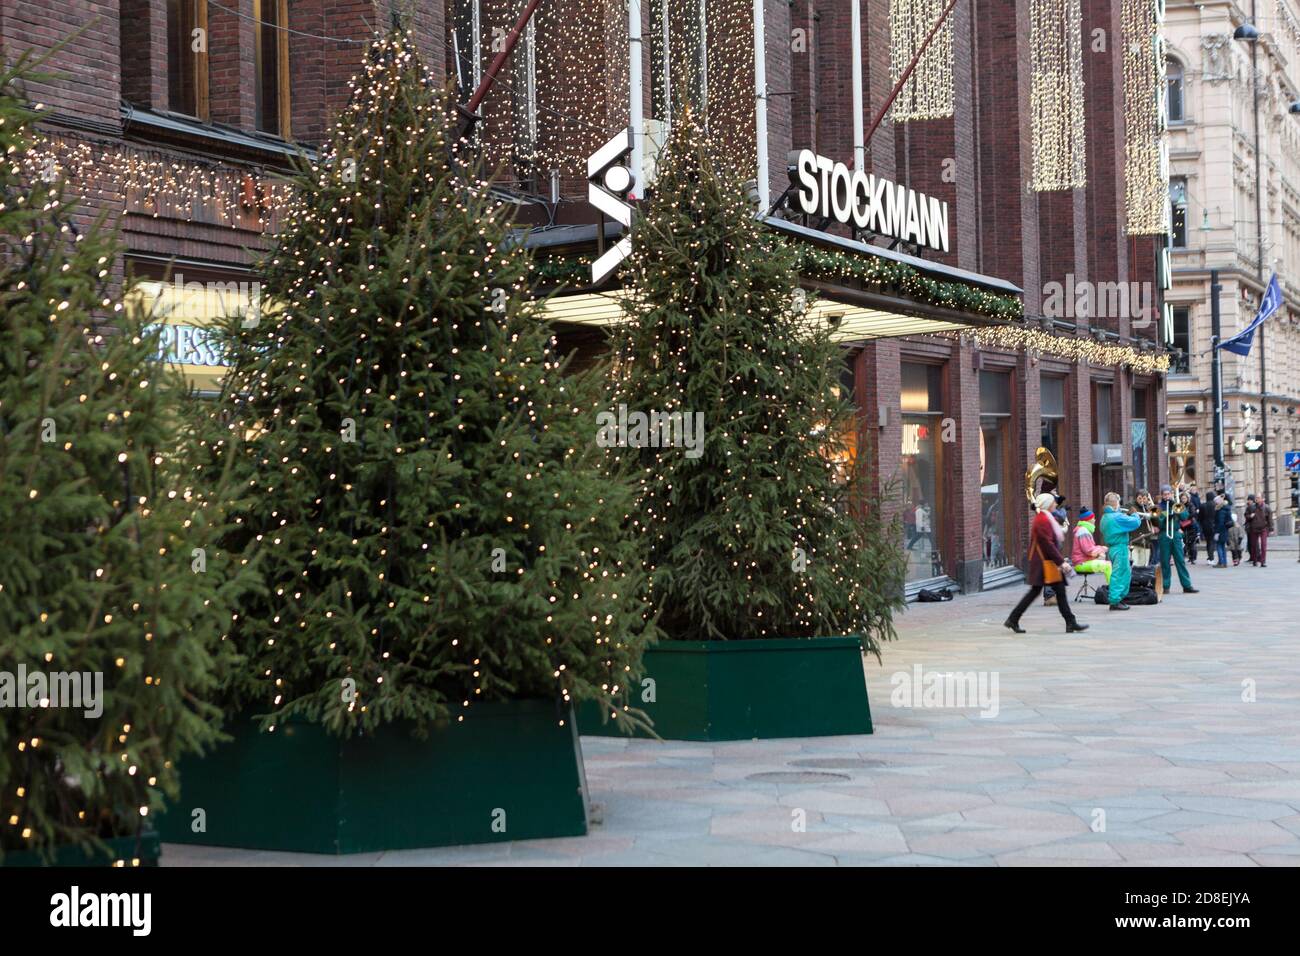 HELSINKI, FINLANDIA-CIRCA DEC, 2018: Seconda entrata al negozio Stockmann con alberi di Natale in luce. Il paesaggio urbano è a dicembre. Il Stockm Foto Stock